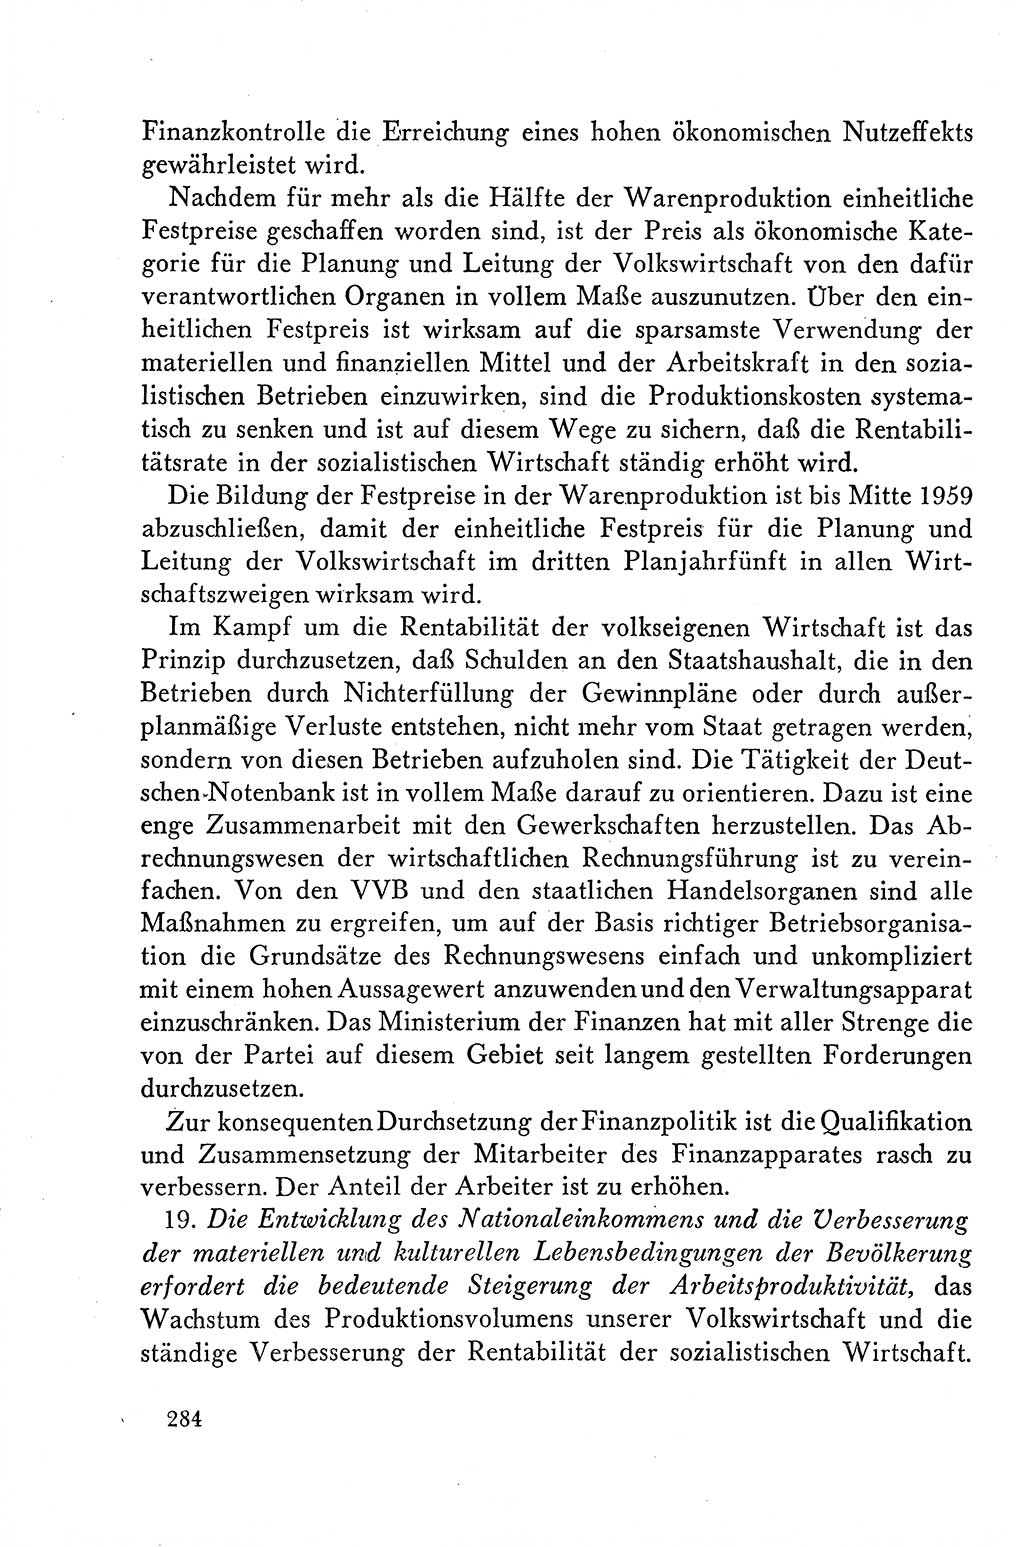 Dokumente der Sozialistischen Einheitspartei Deutschlands (SED) [Deutsche Demokratische Republik (DDR)] 1958-1959, Seite 284 (Dok. SED DDR 1958-1959, S. 284)